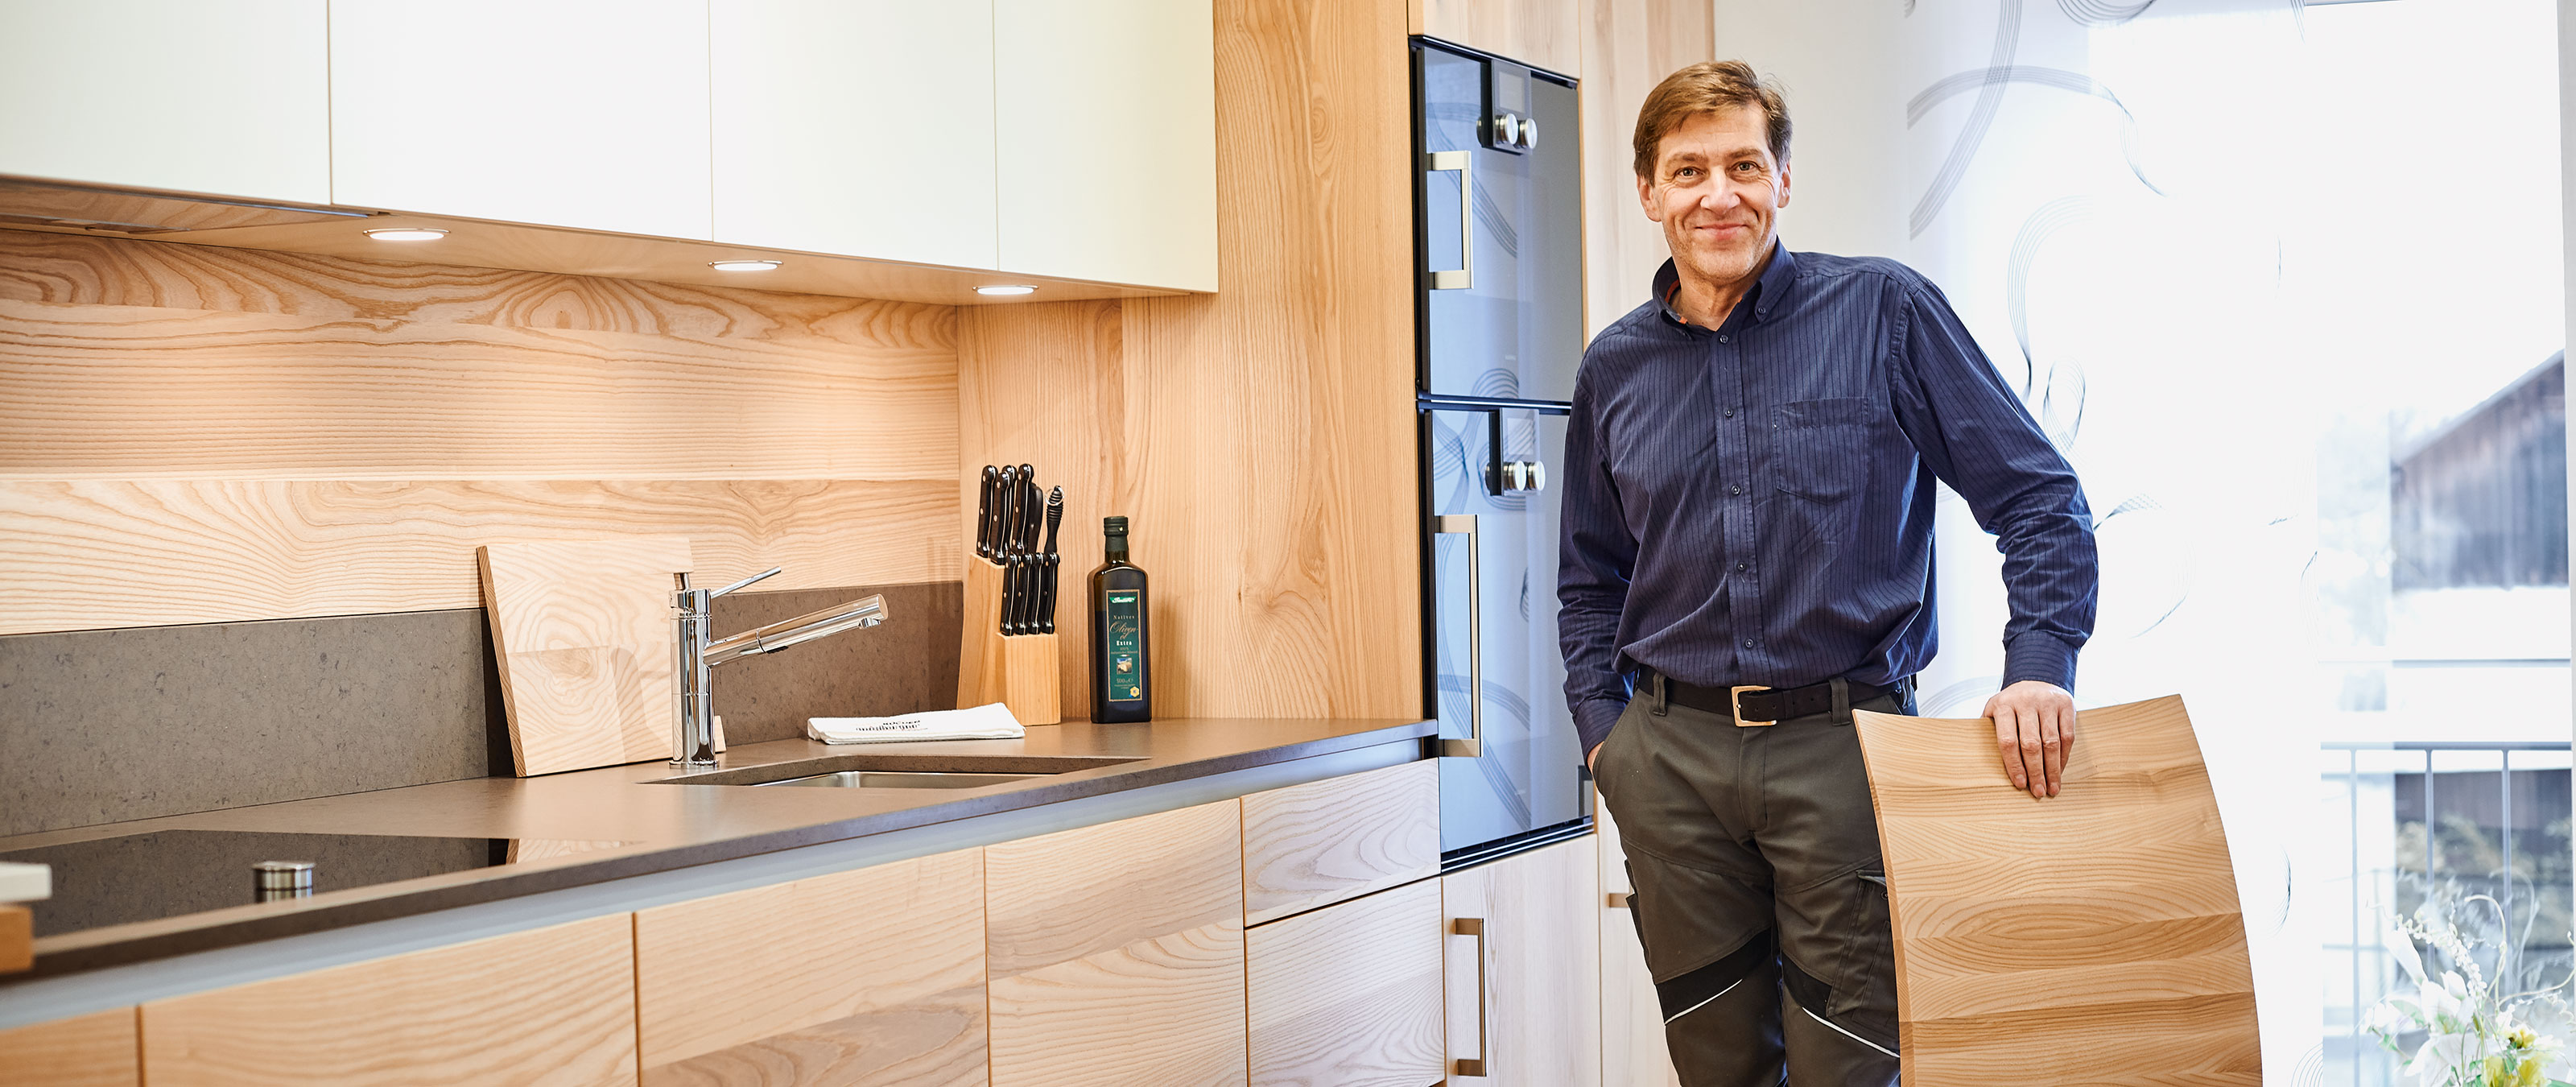 カスタムメイドのキッチン: 家具職人のマイスター Martin Geisberger は、品質を最も重視しています